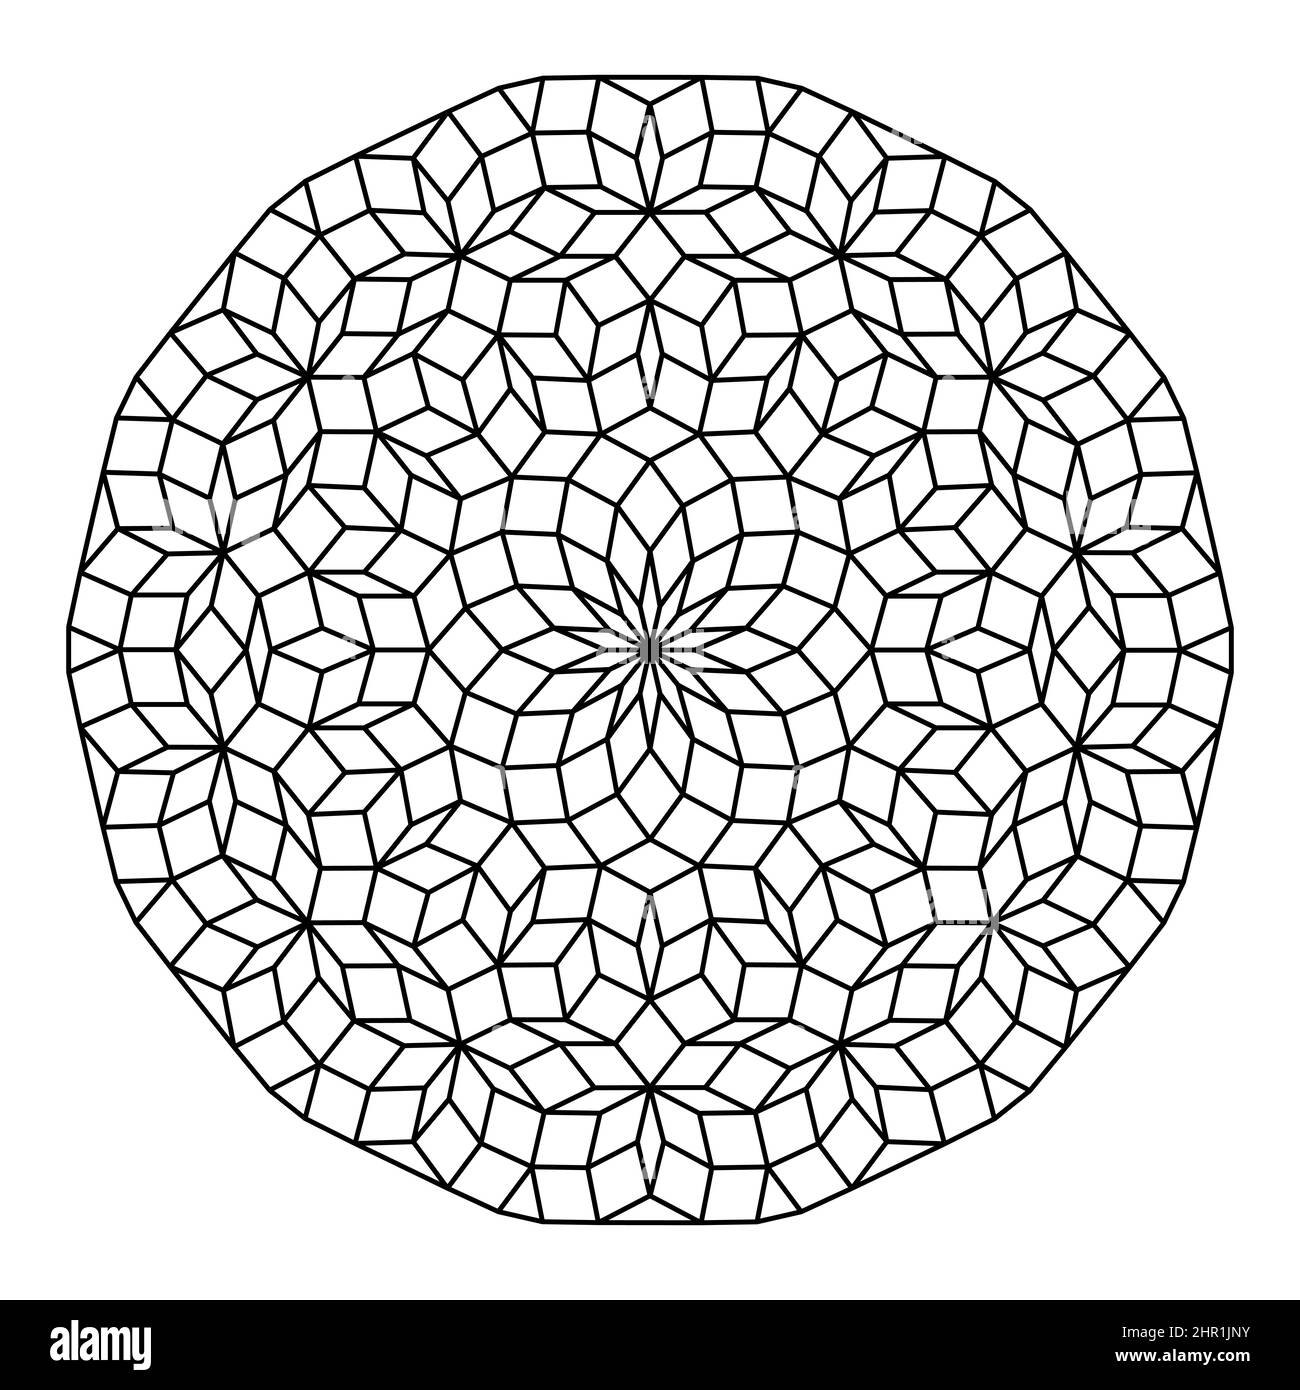 Kreis mit Penrose-Muster. Penrose-Fliesen mit Raute. Nicht-regelmäßige Tilings, die durch einen aperiodenhaften Satz von Prototlien erzeugt werden. Stockfoto